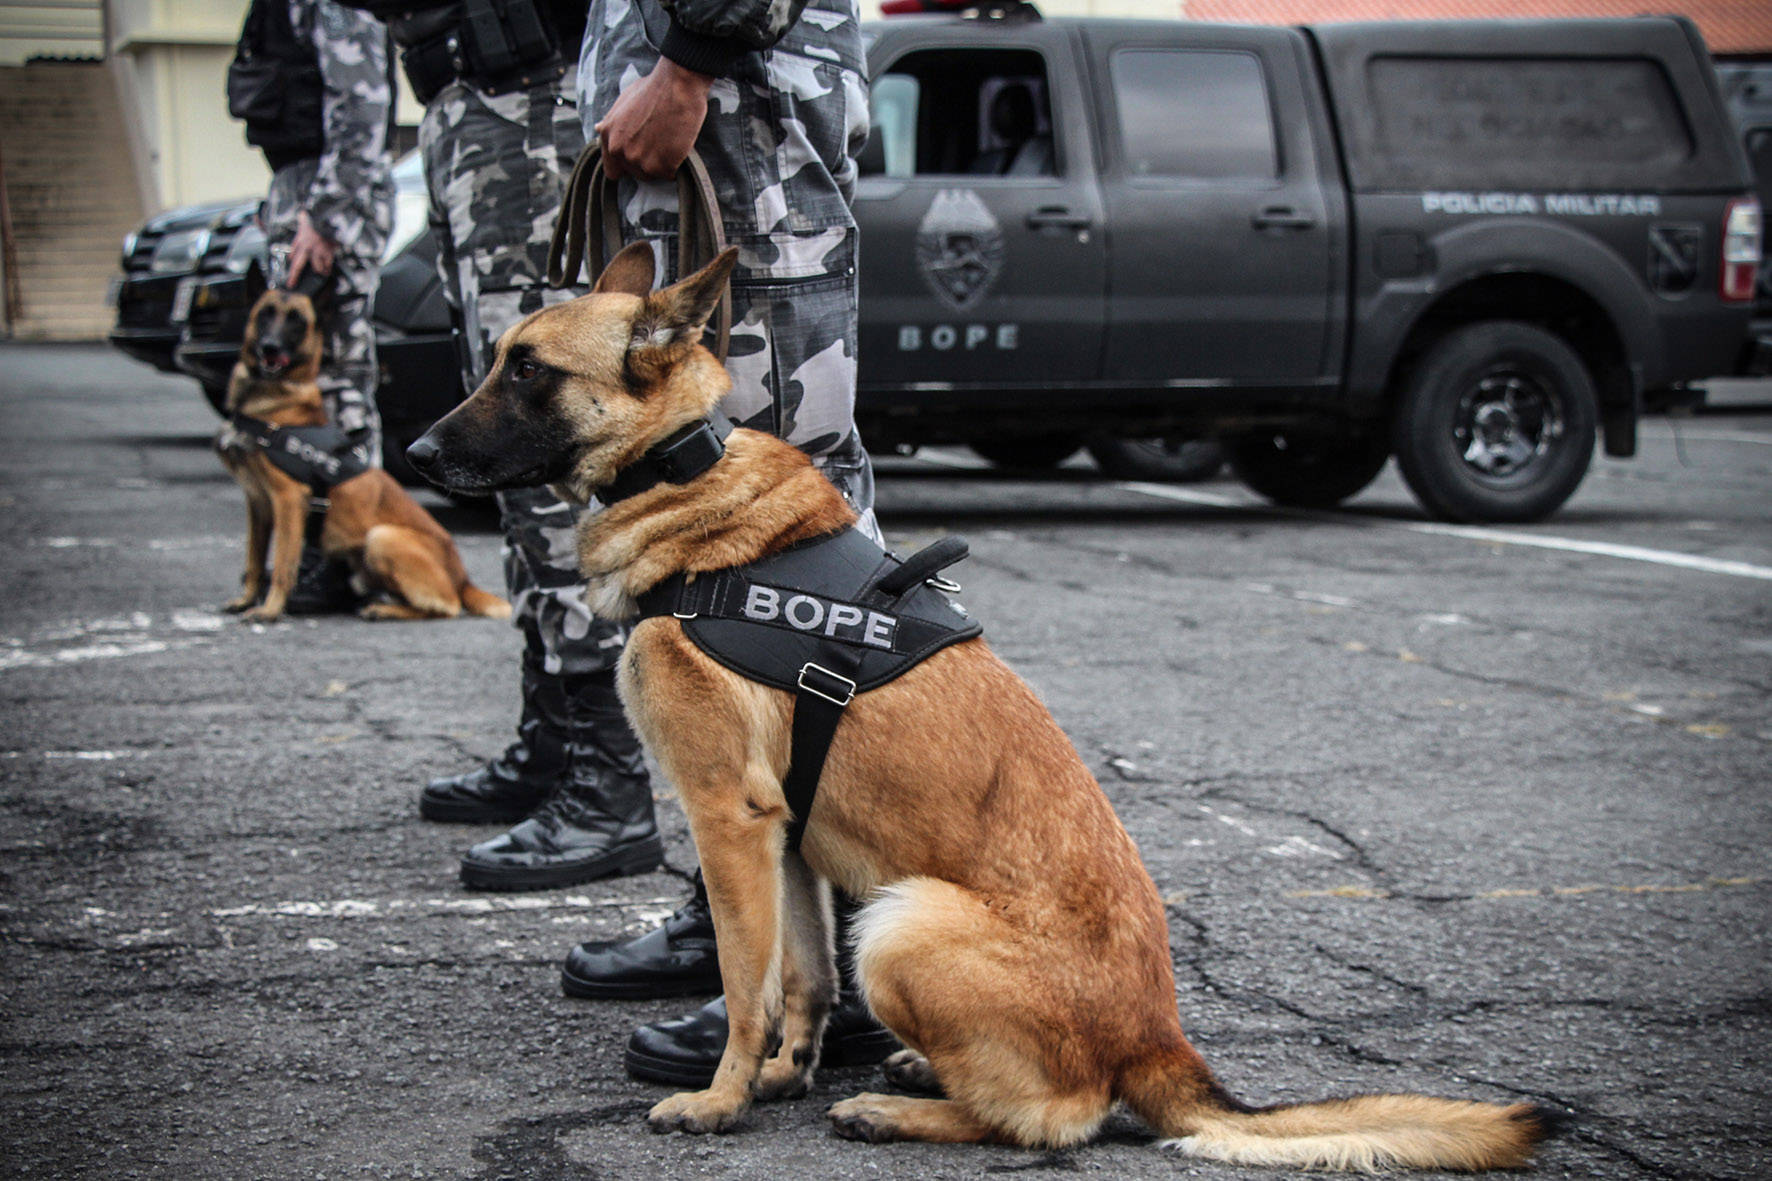 Apreensão de drogas com uso de cães da PM aumenta em quase 1.000% no Paraná